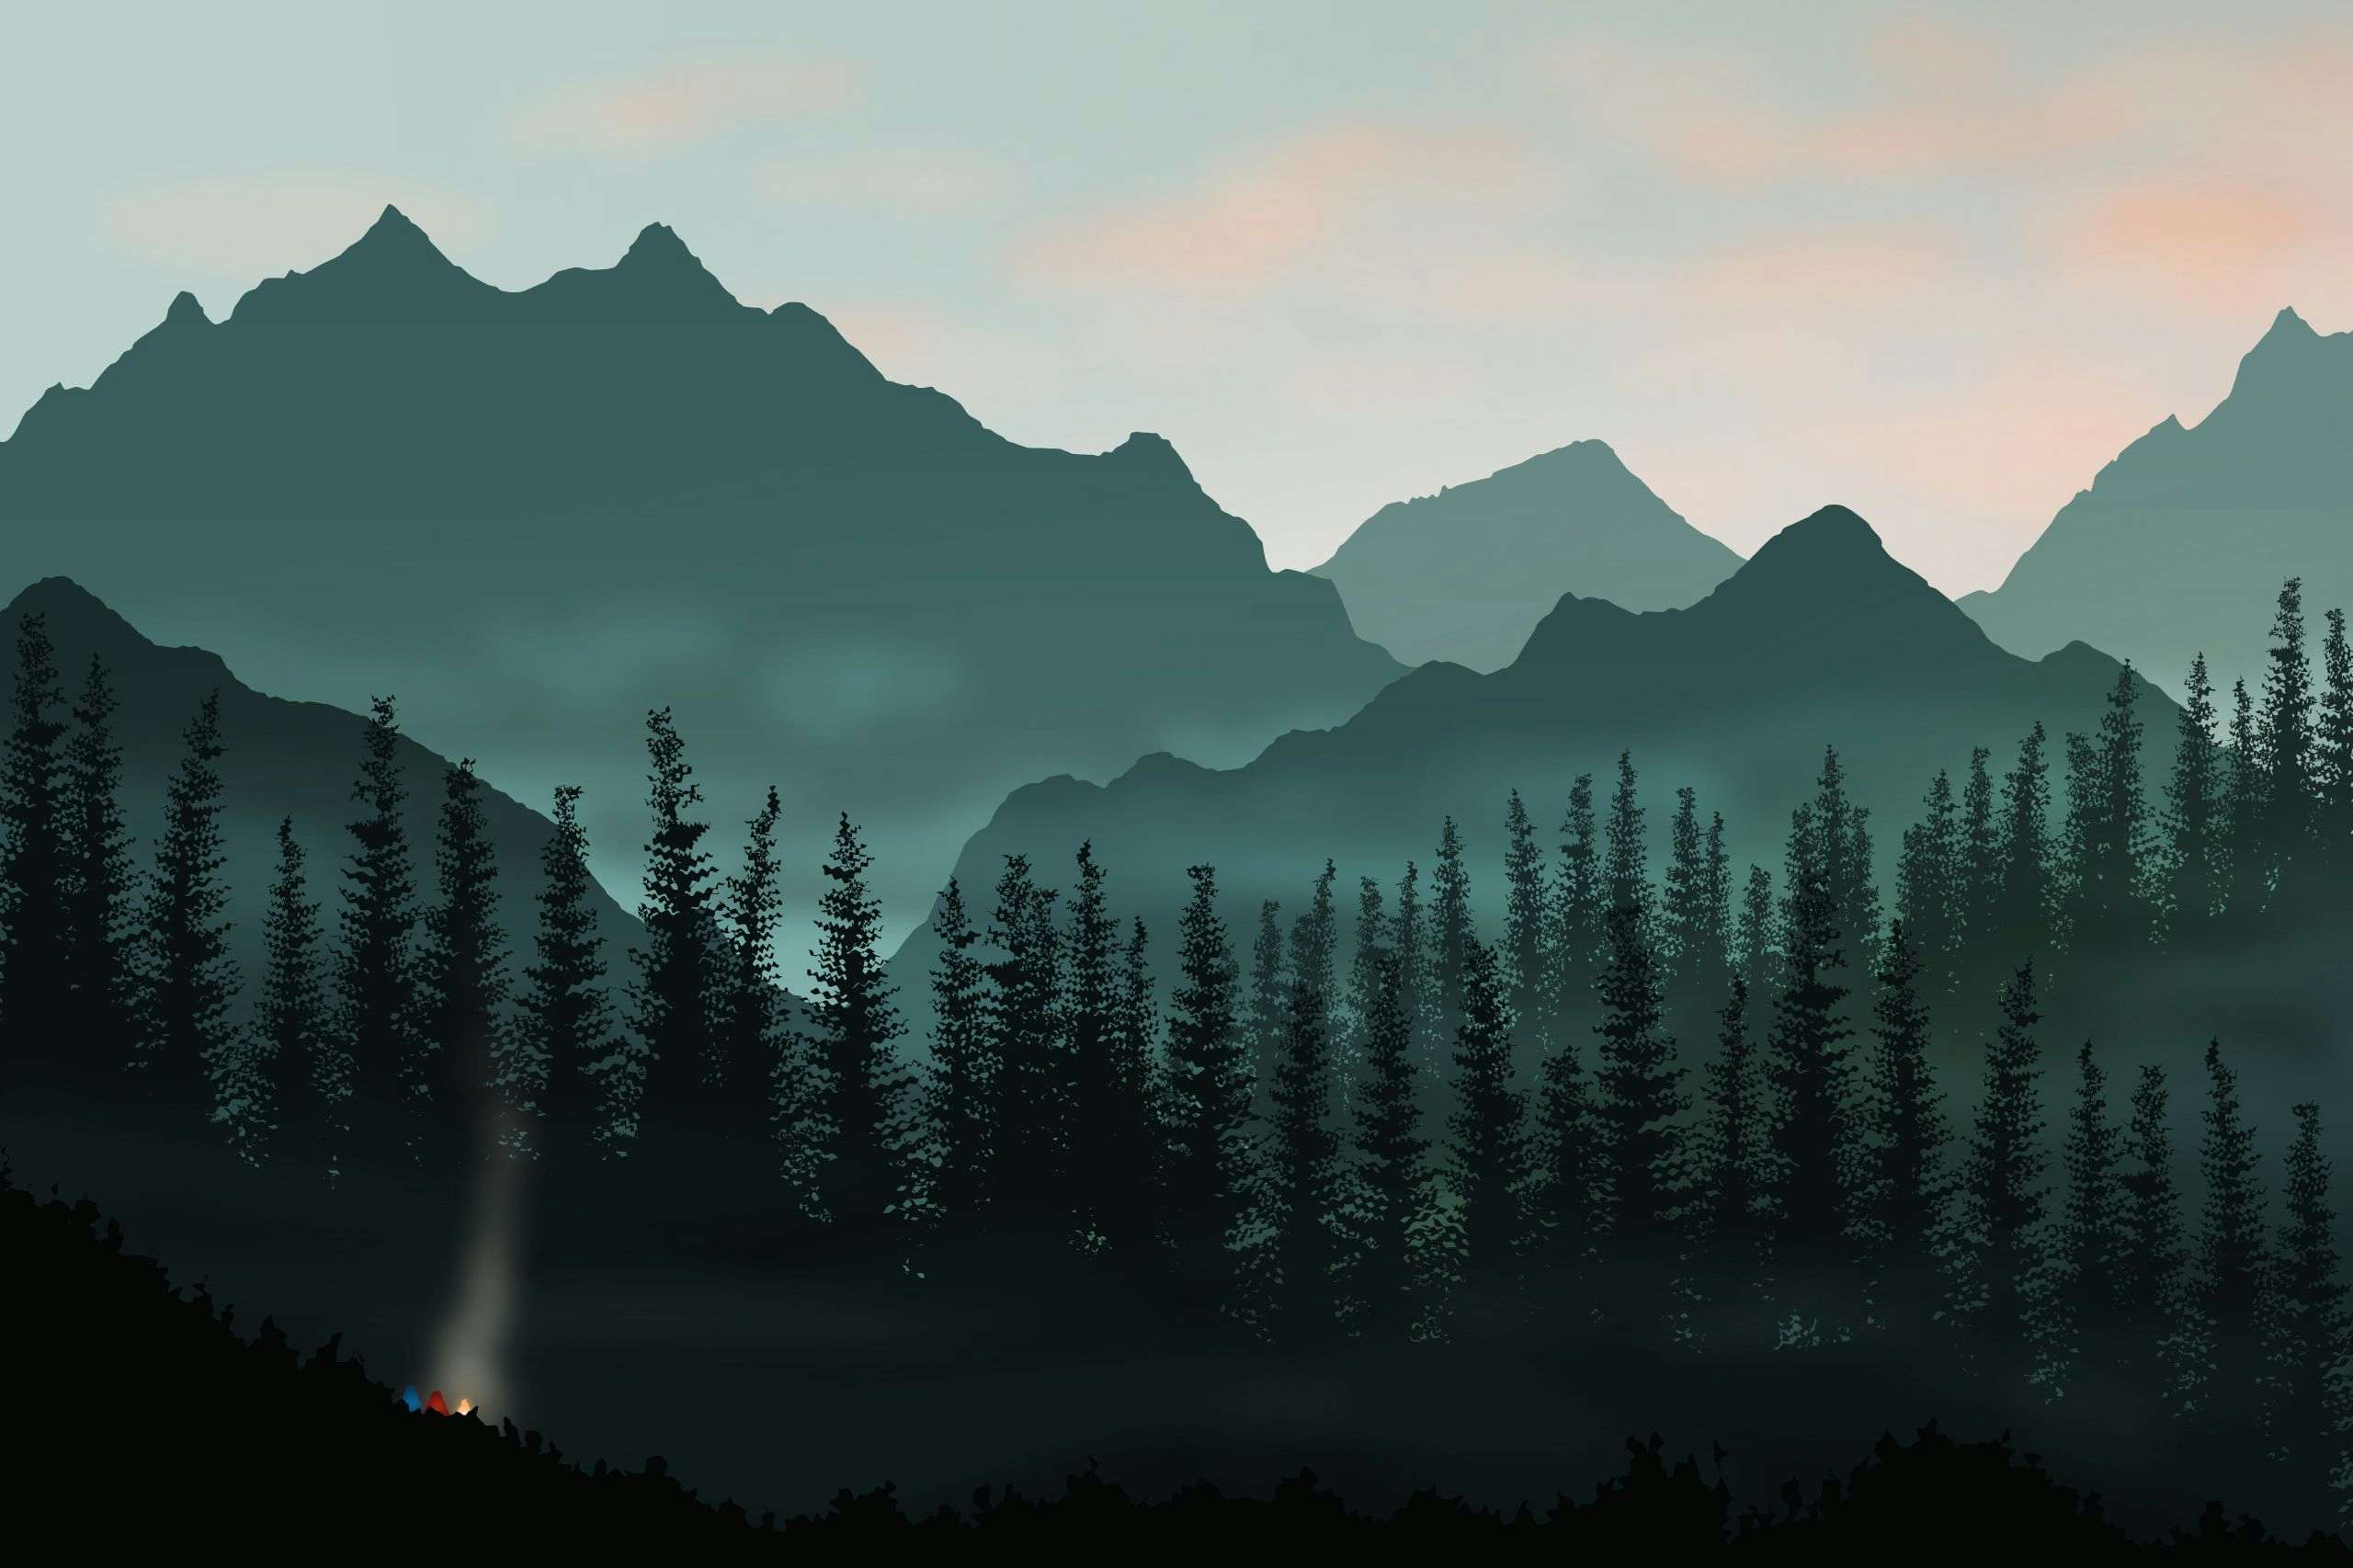 Alpine landscape illustration by Xavier Wendling